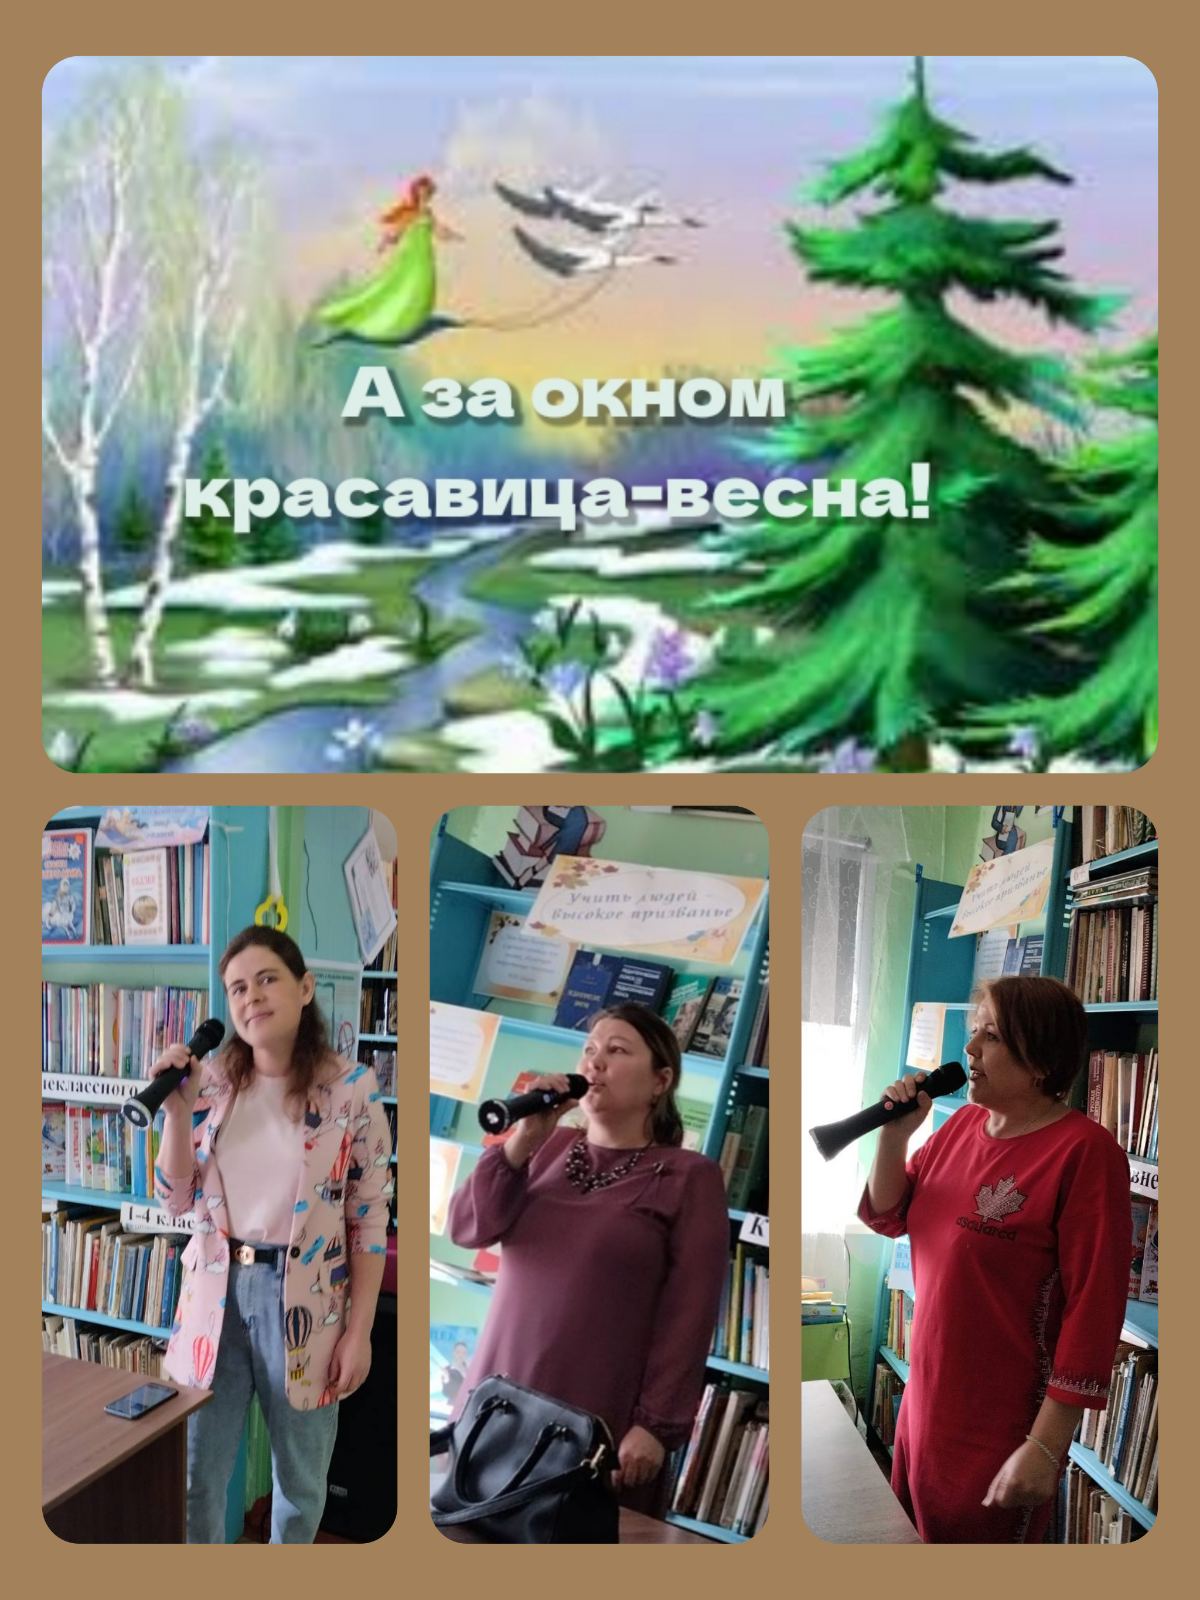 26 марта в Билютайской сельской библиотеке работниками культуры проведена  конкурсно-игровая музыкальная программа &amp;quot;А за окном красавица-весна&amp;quot;